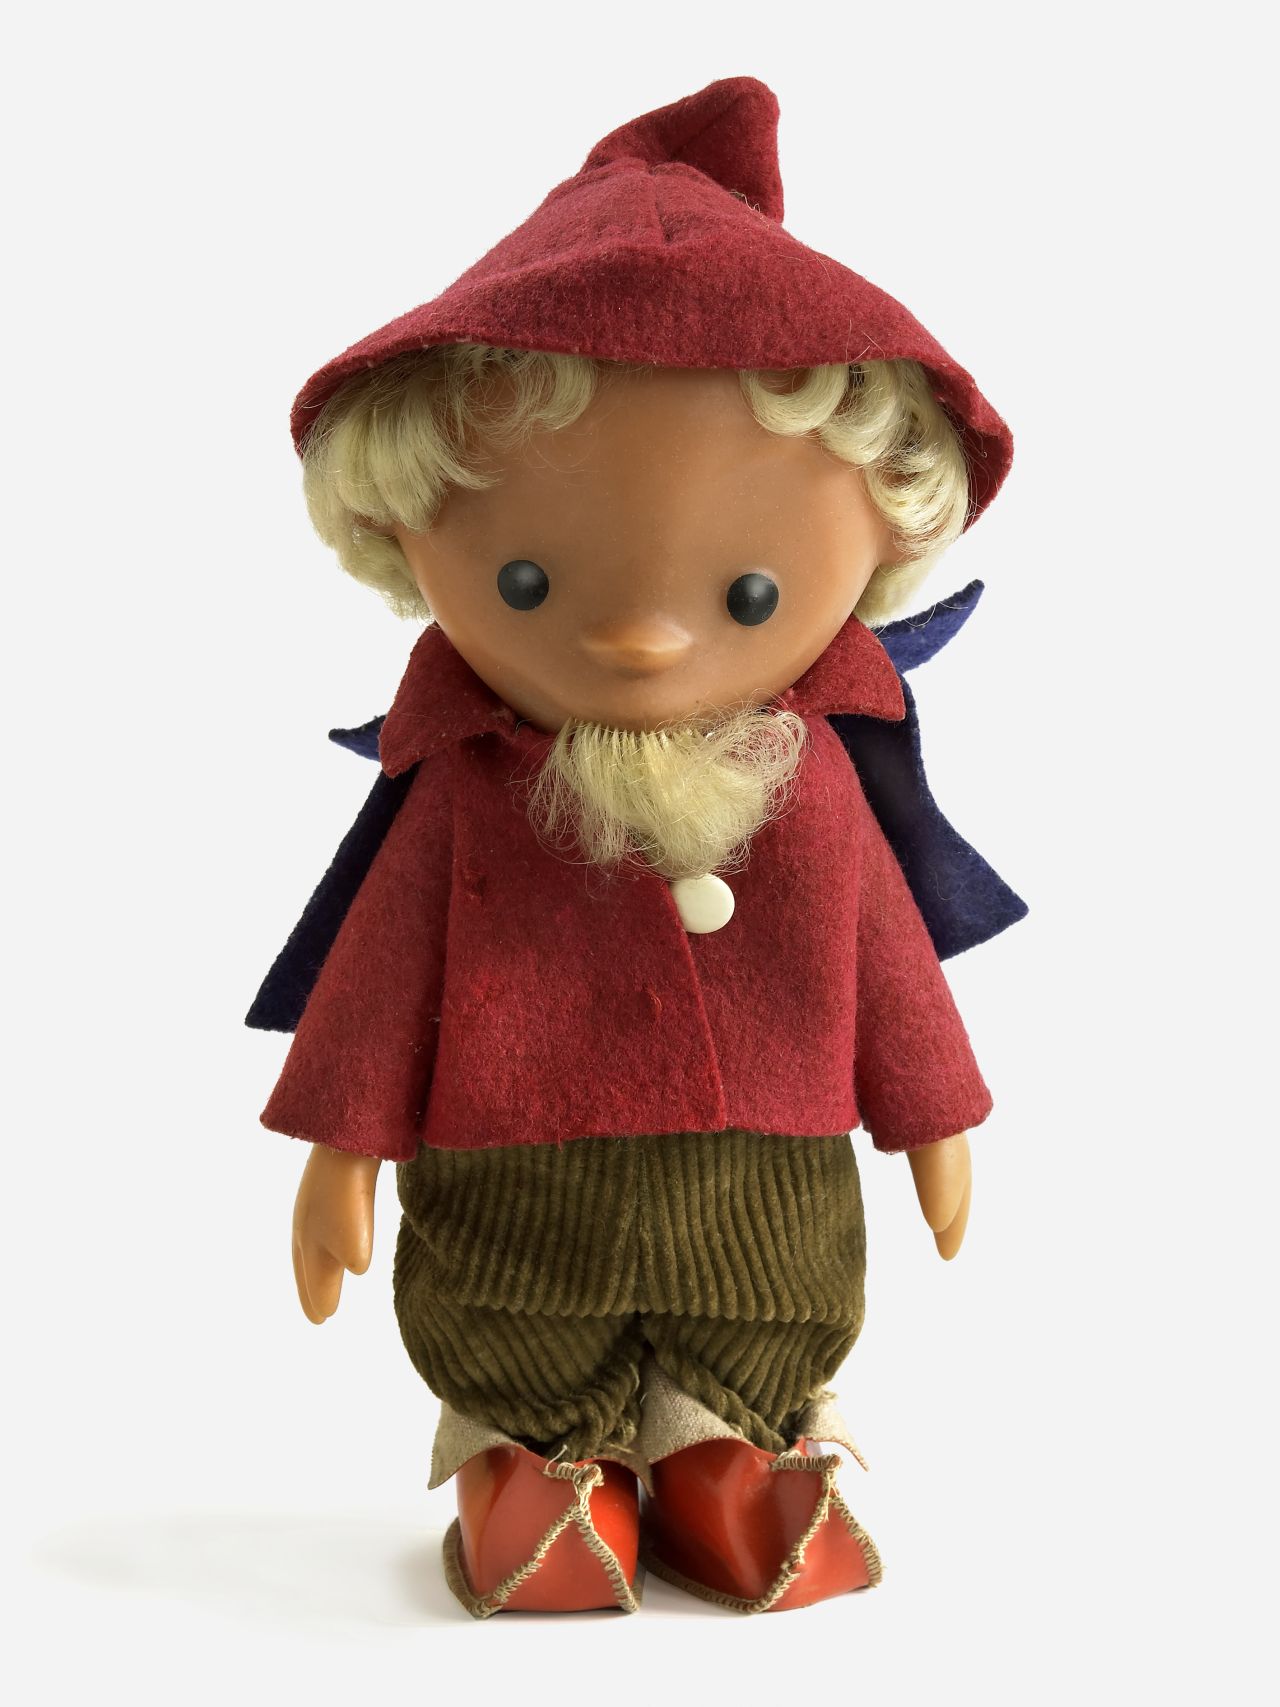 Sandmännchen-Puppe mit rotem Hut, Jacke und Schuhen sowie lila Umhang und grüner Cordhose.